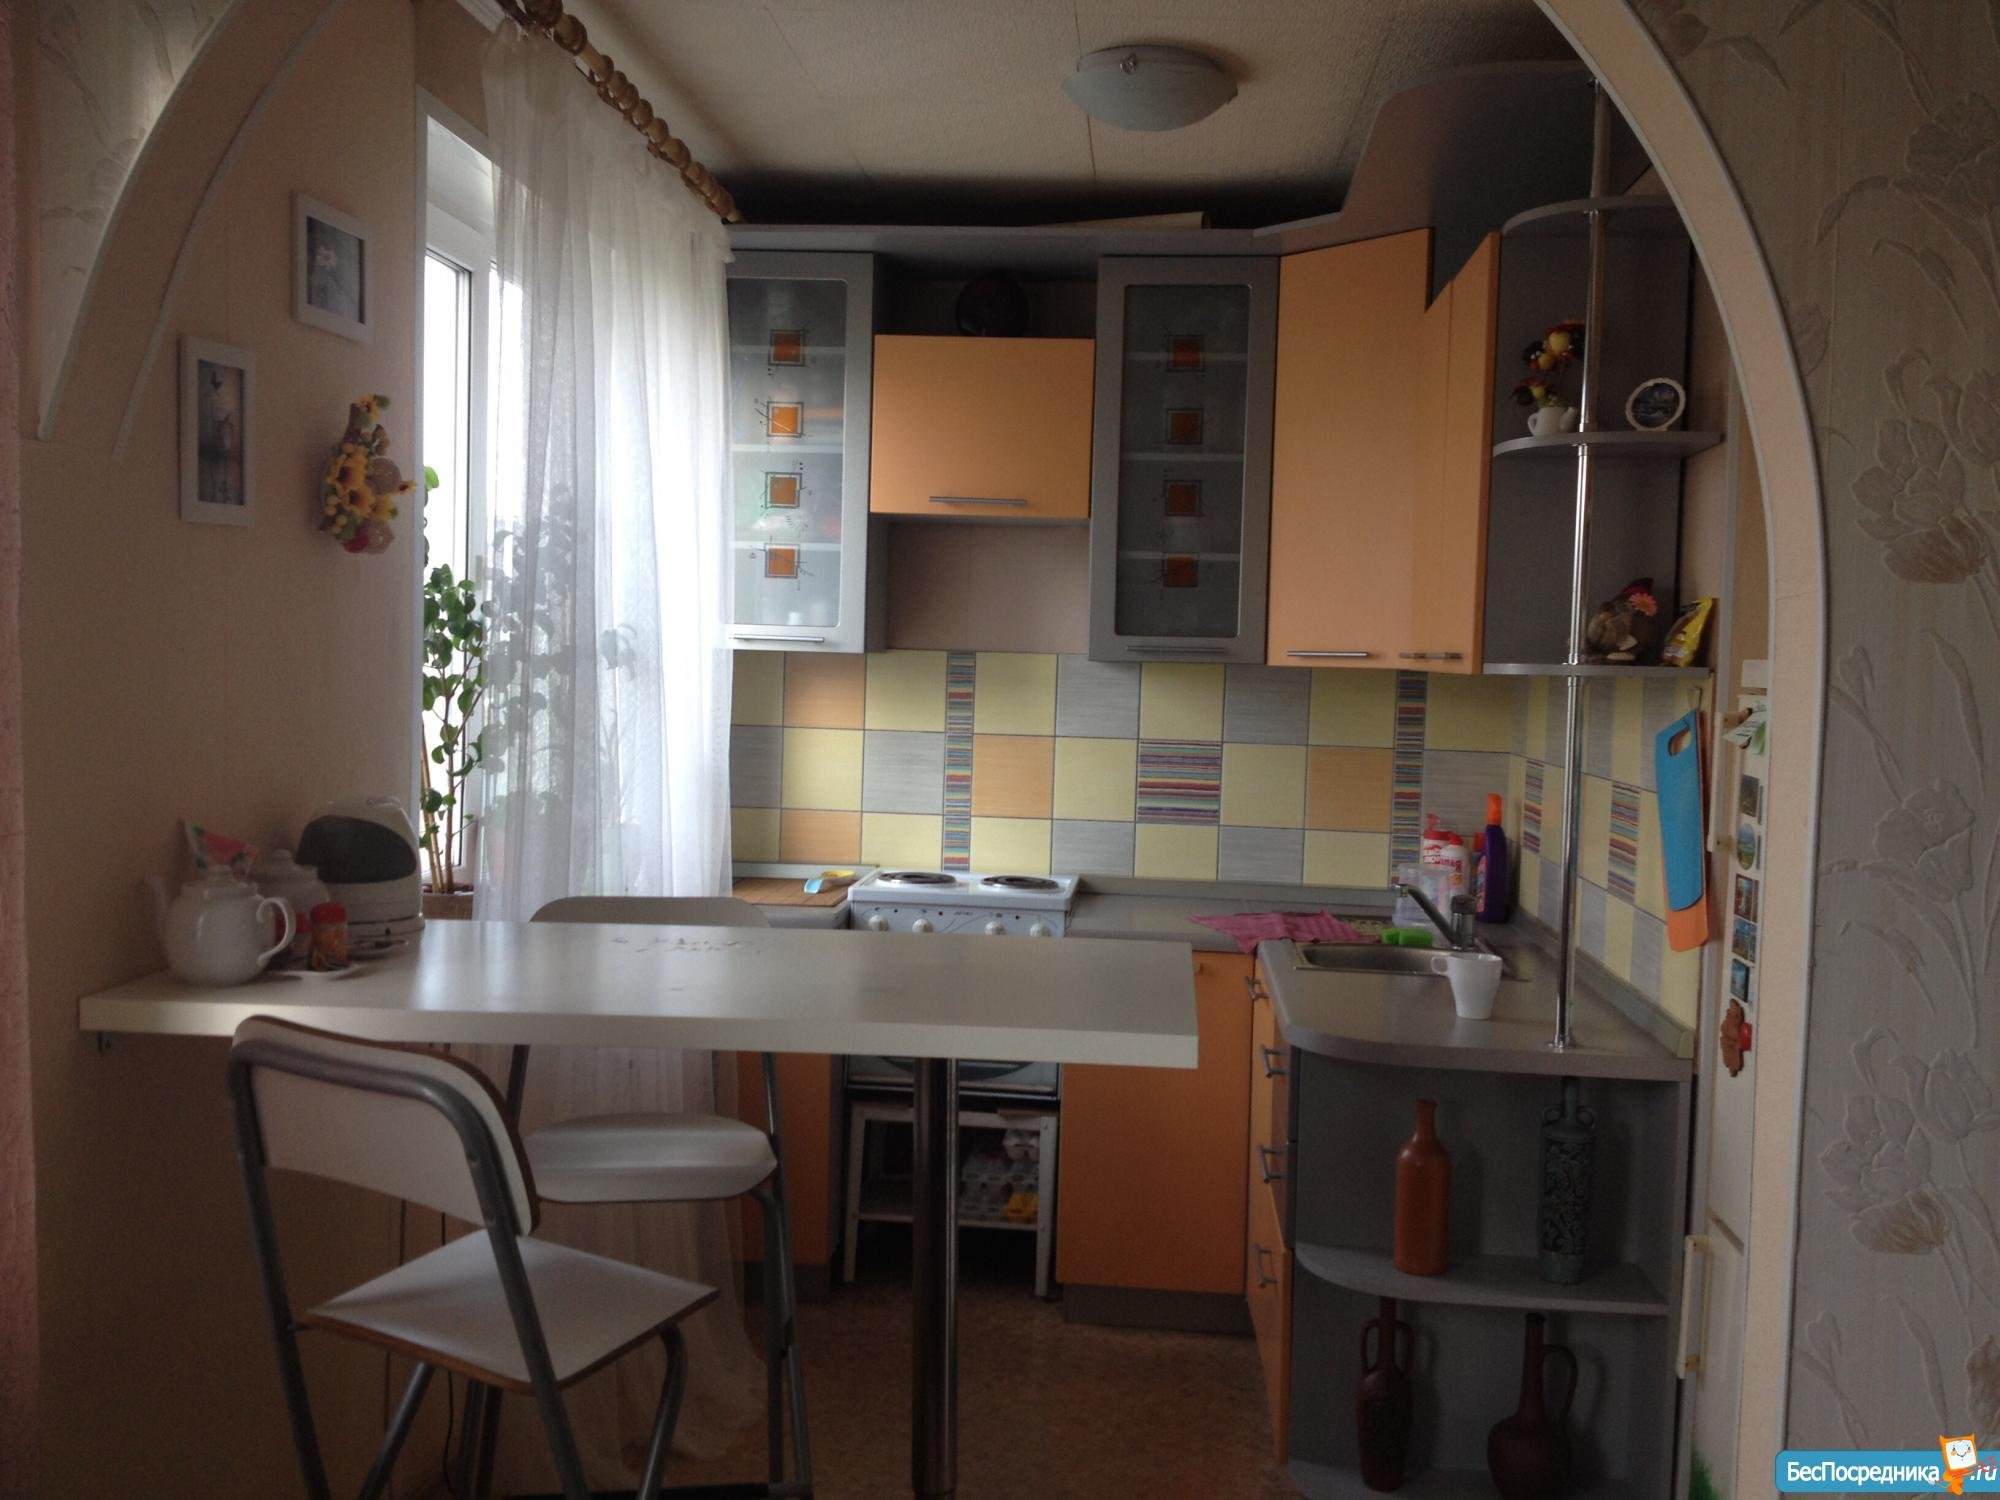 Фото объединения кухни и комнаты в хрущевке фото